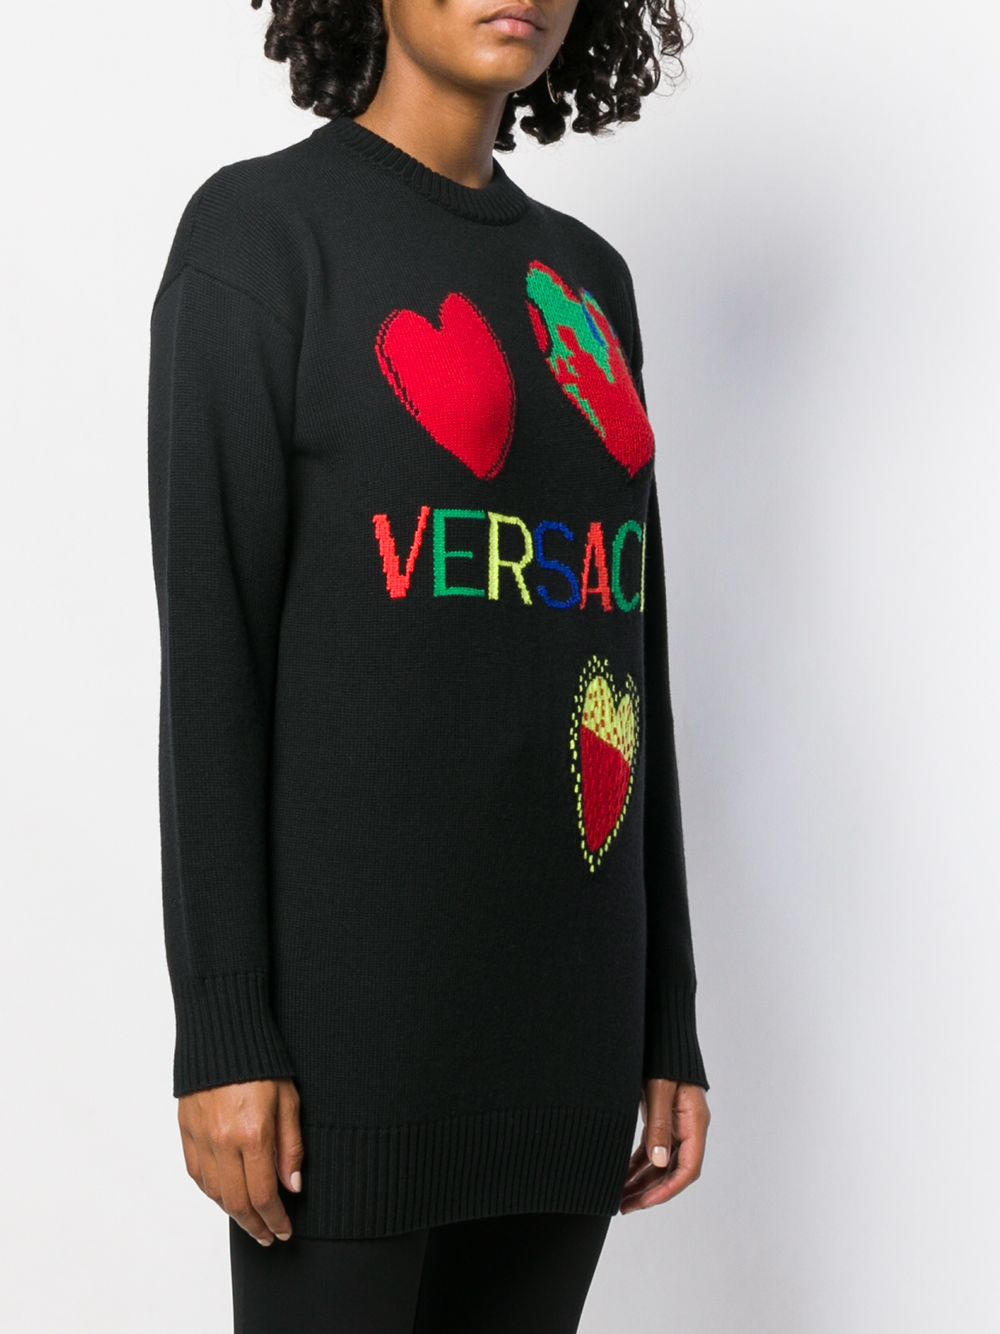 фото Versace свитер жаккардовой вязки с логотипом